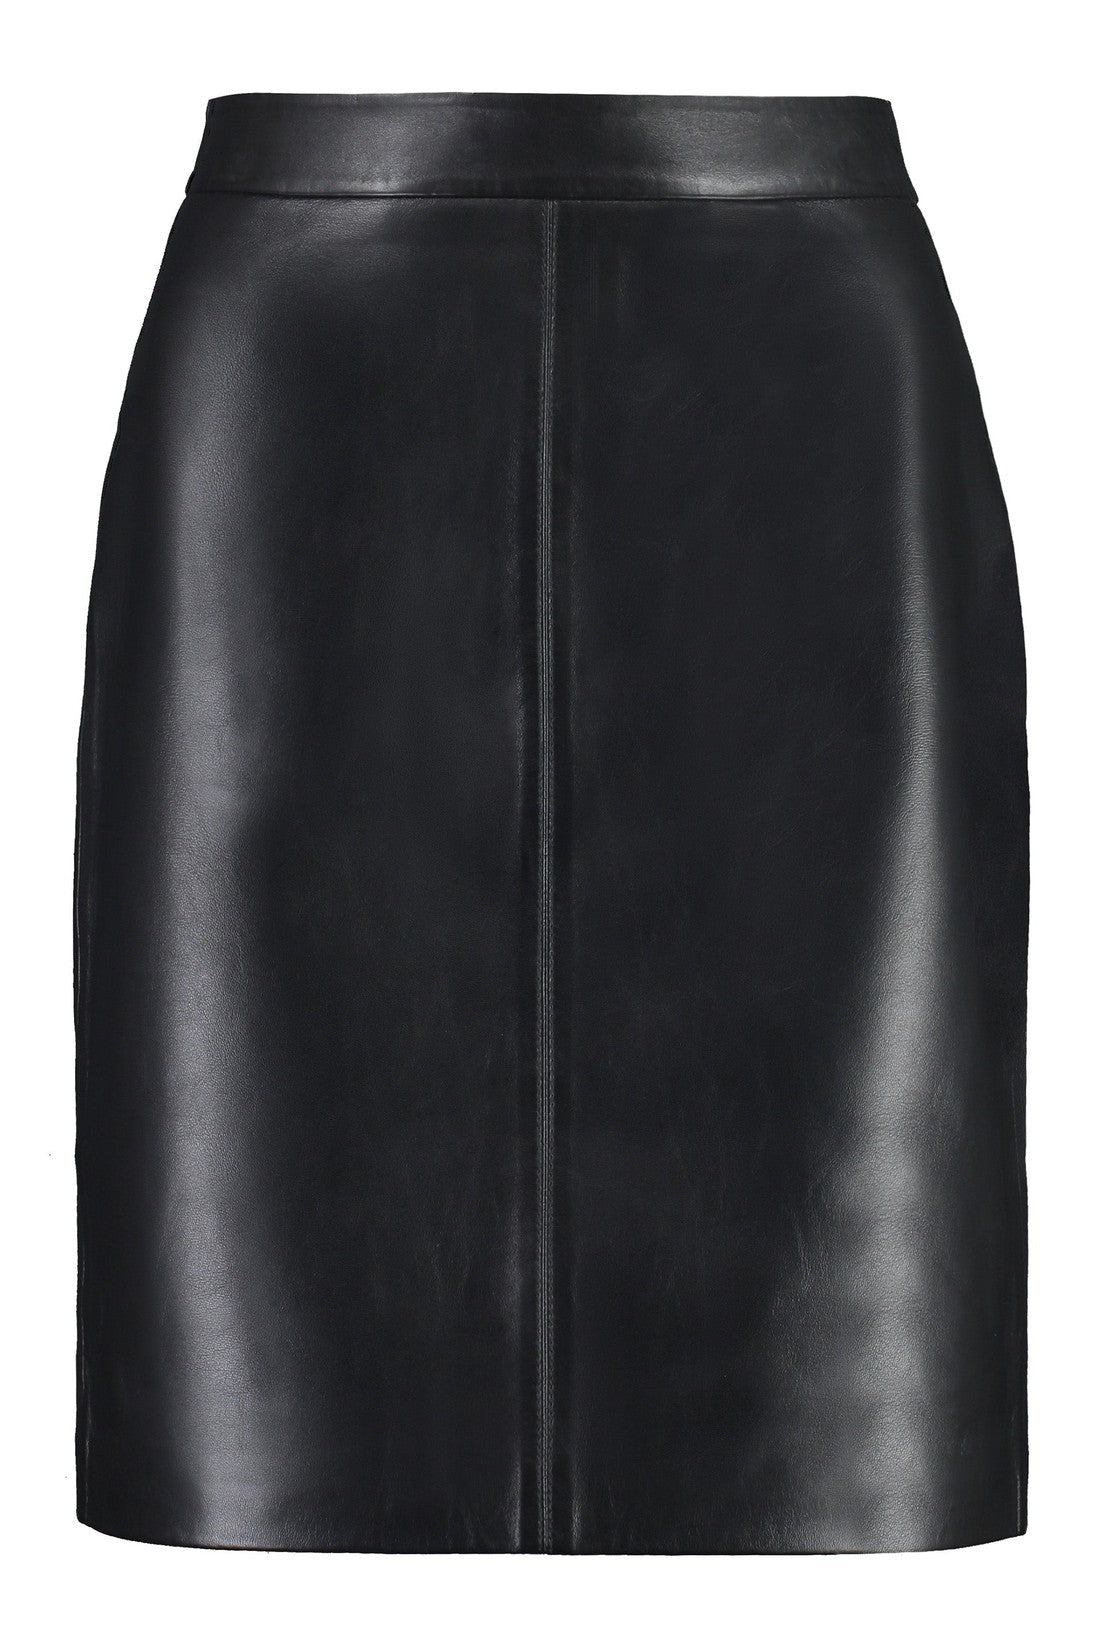 MICHAEL MICHAEL KORS-OUTLET-SALE-Faux leather skirt-ARCHIVIST